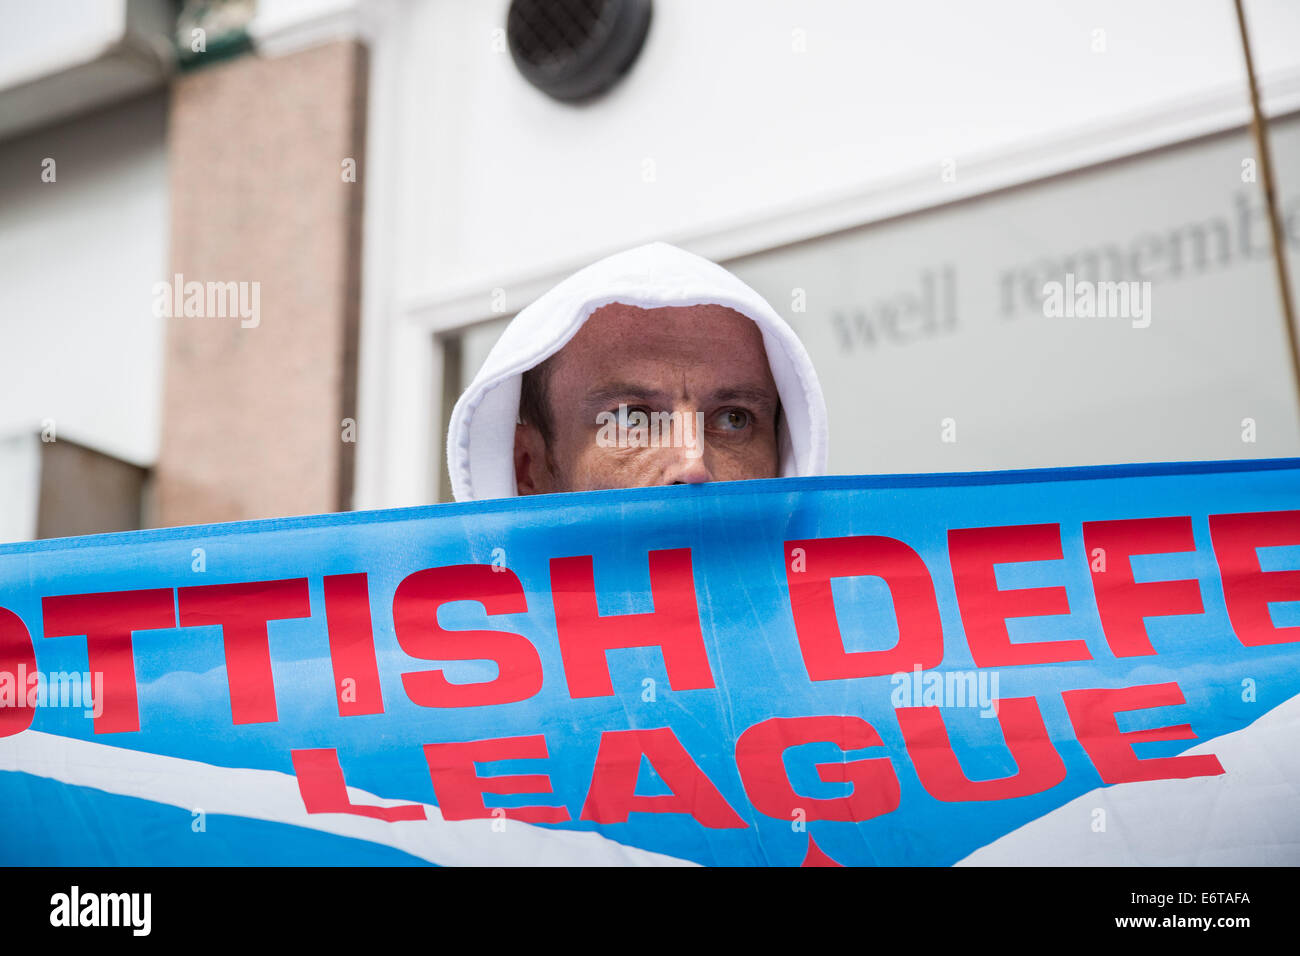 Londres, Reino Unido. 30 Aug, 2014. Al sureste de la Alianza nacionalista de extrema derecha protesta 2014 Crédito: Guy Corbishley/Alamy Live News Foto de stock